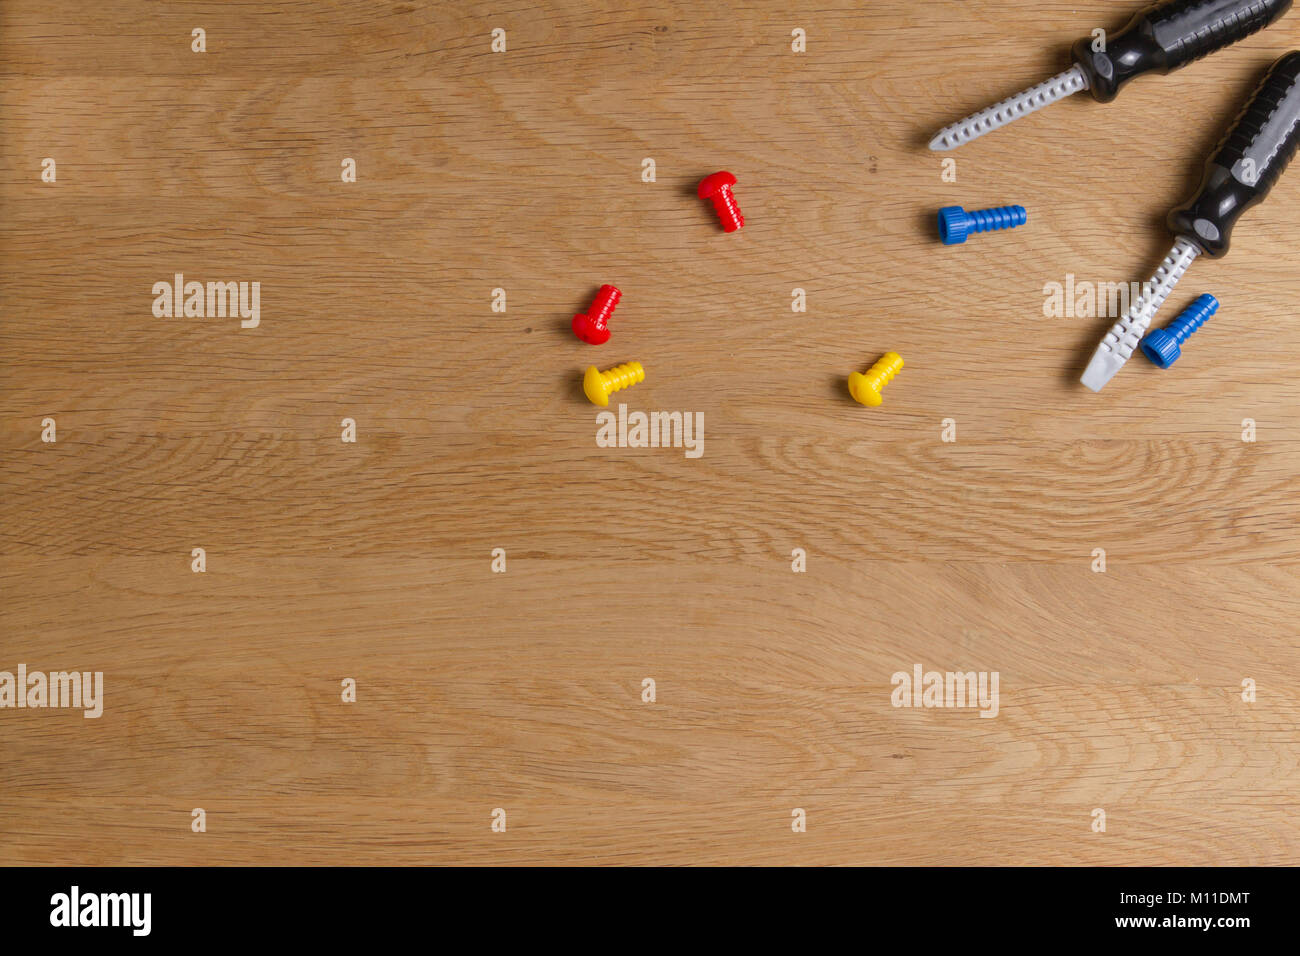 Kinder Spielzeug Tools: Plastik Schraubendreher, Schrauben und Muttern auf  Holz- Hintergrund. Ansicht von oben. Flach Stockfotografie - Alamy